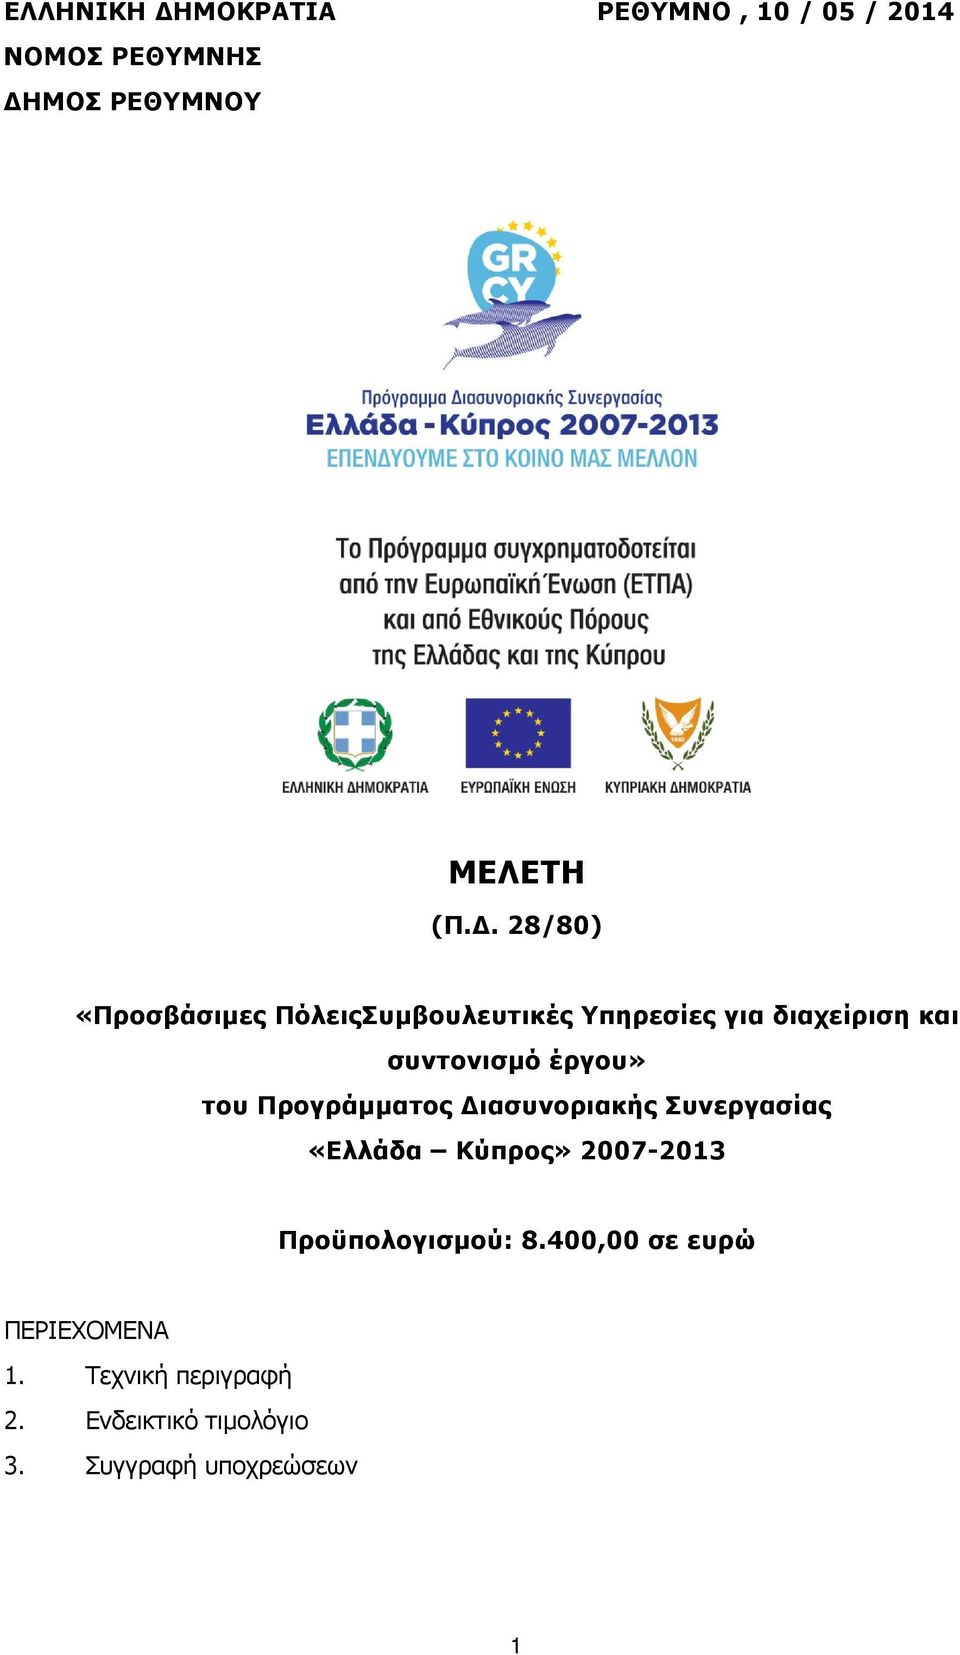 έργου» του Προγράμματος ιασυνοριακής Συνεργασίας «Ελλάδα Κύπρος» 2007-2013